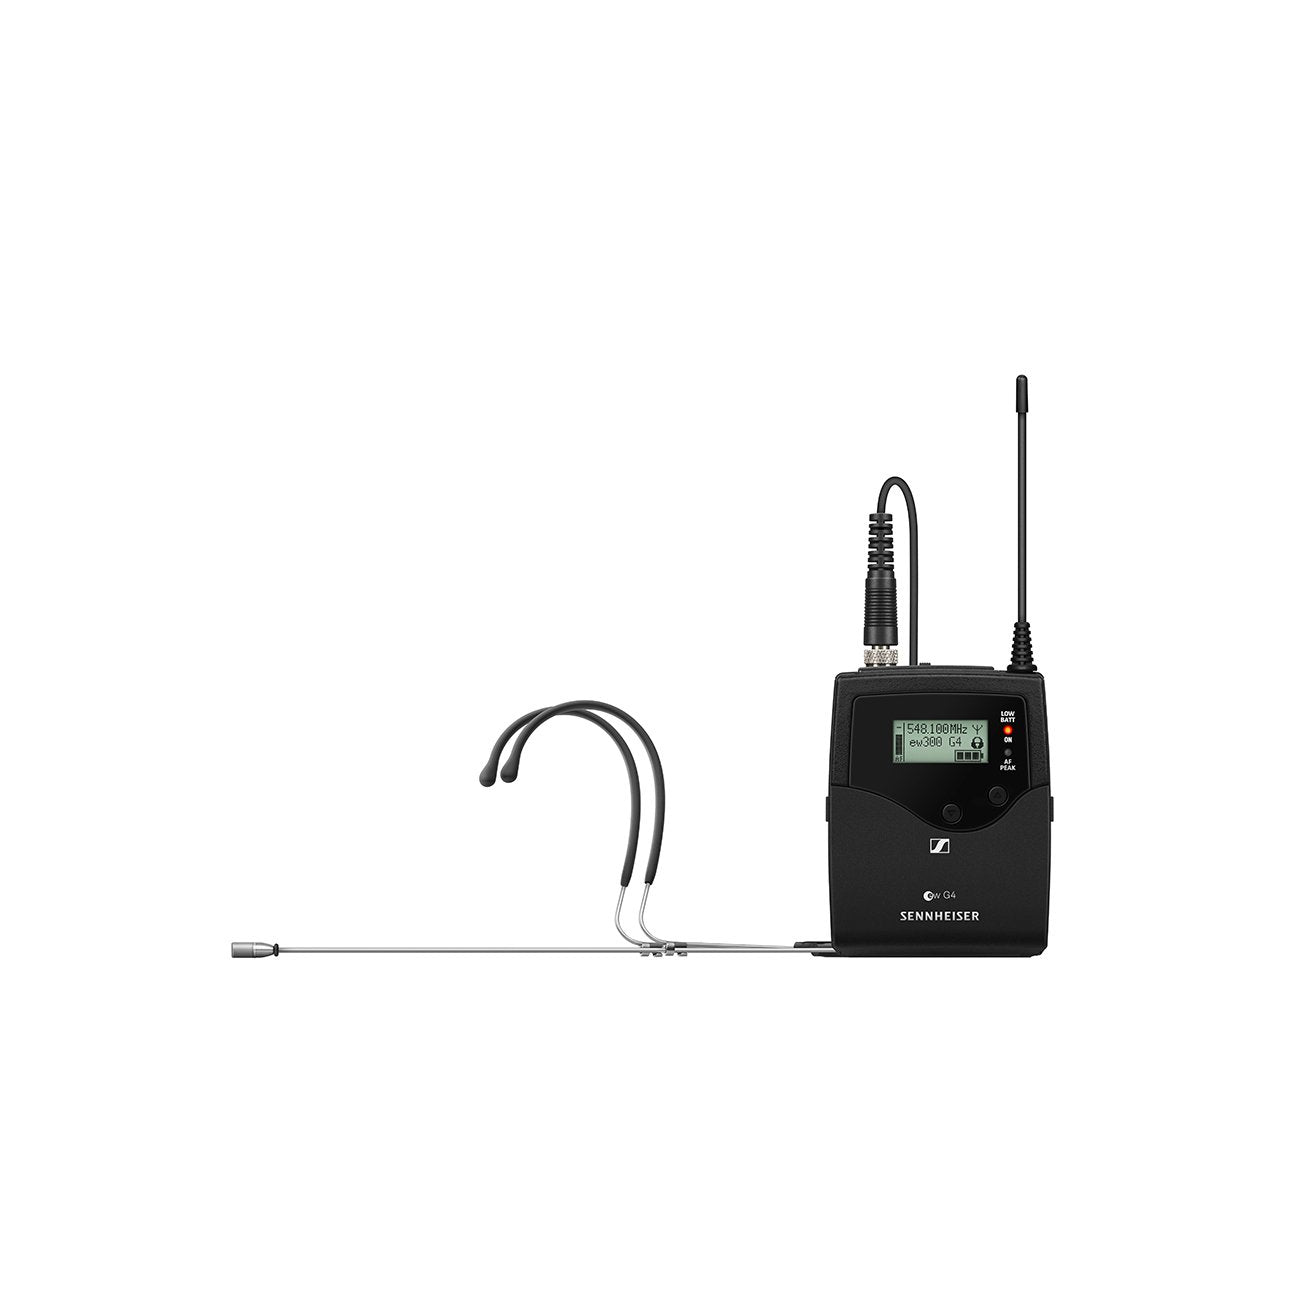 SENNHEISER EW 300 G4-HEADMIC1-RC WIRELESS HEADWORN SYSTEM WITH GATOR GM-1W WIRELESS BAG (EW300 G4 HEADMIC1 RC) , SENNHEISER, WIRELESS MICROPHONE SYSTEM, sennheiser-wireless-microphone-system-ew300g4headmic1rc, ZOSO MUSIC SDN BHD